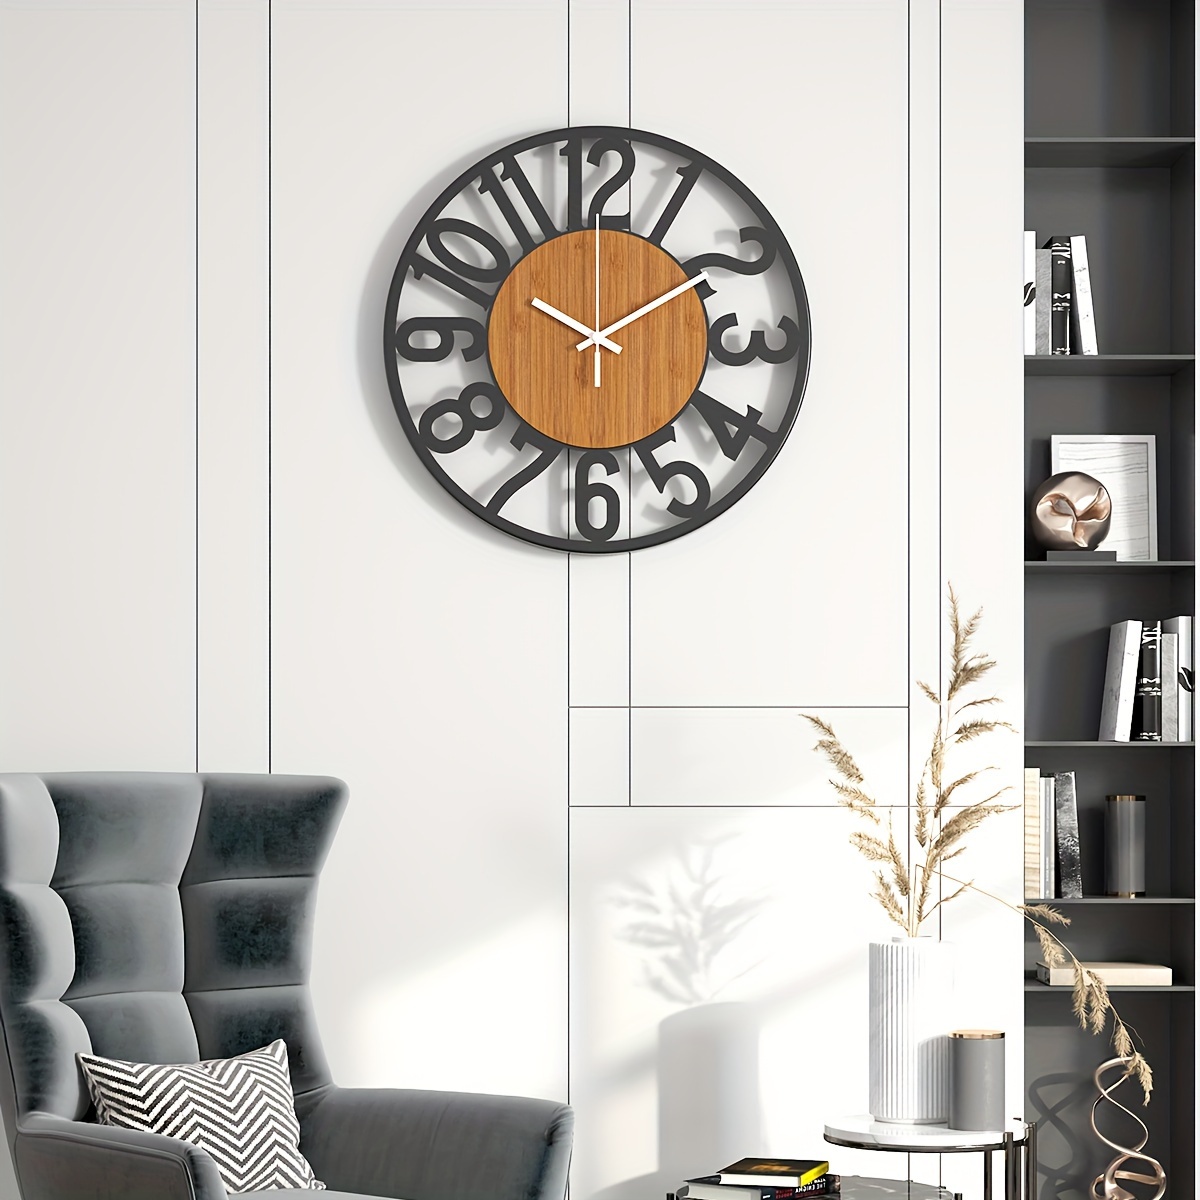  Hewen - Reloj de pared para cocina, oficina, dormitorio (11.0  in), diseño retro : Hogar y Cocina